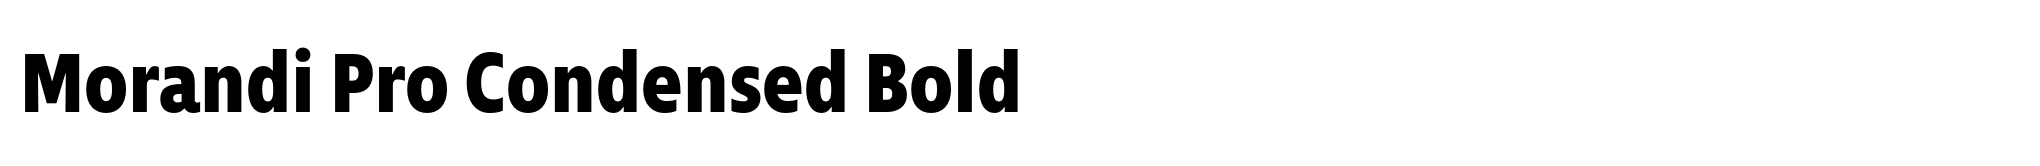 Morandi Pro Condensed Bold image